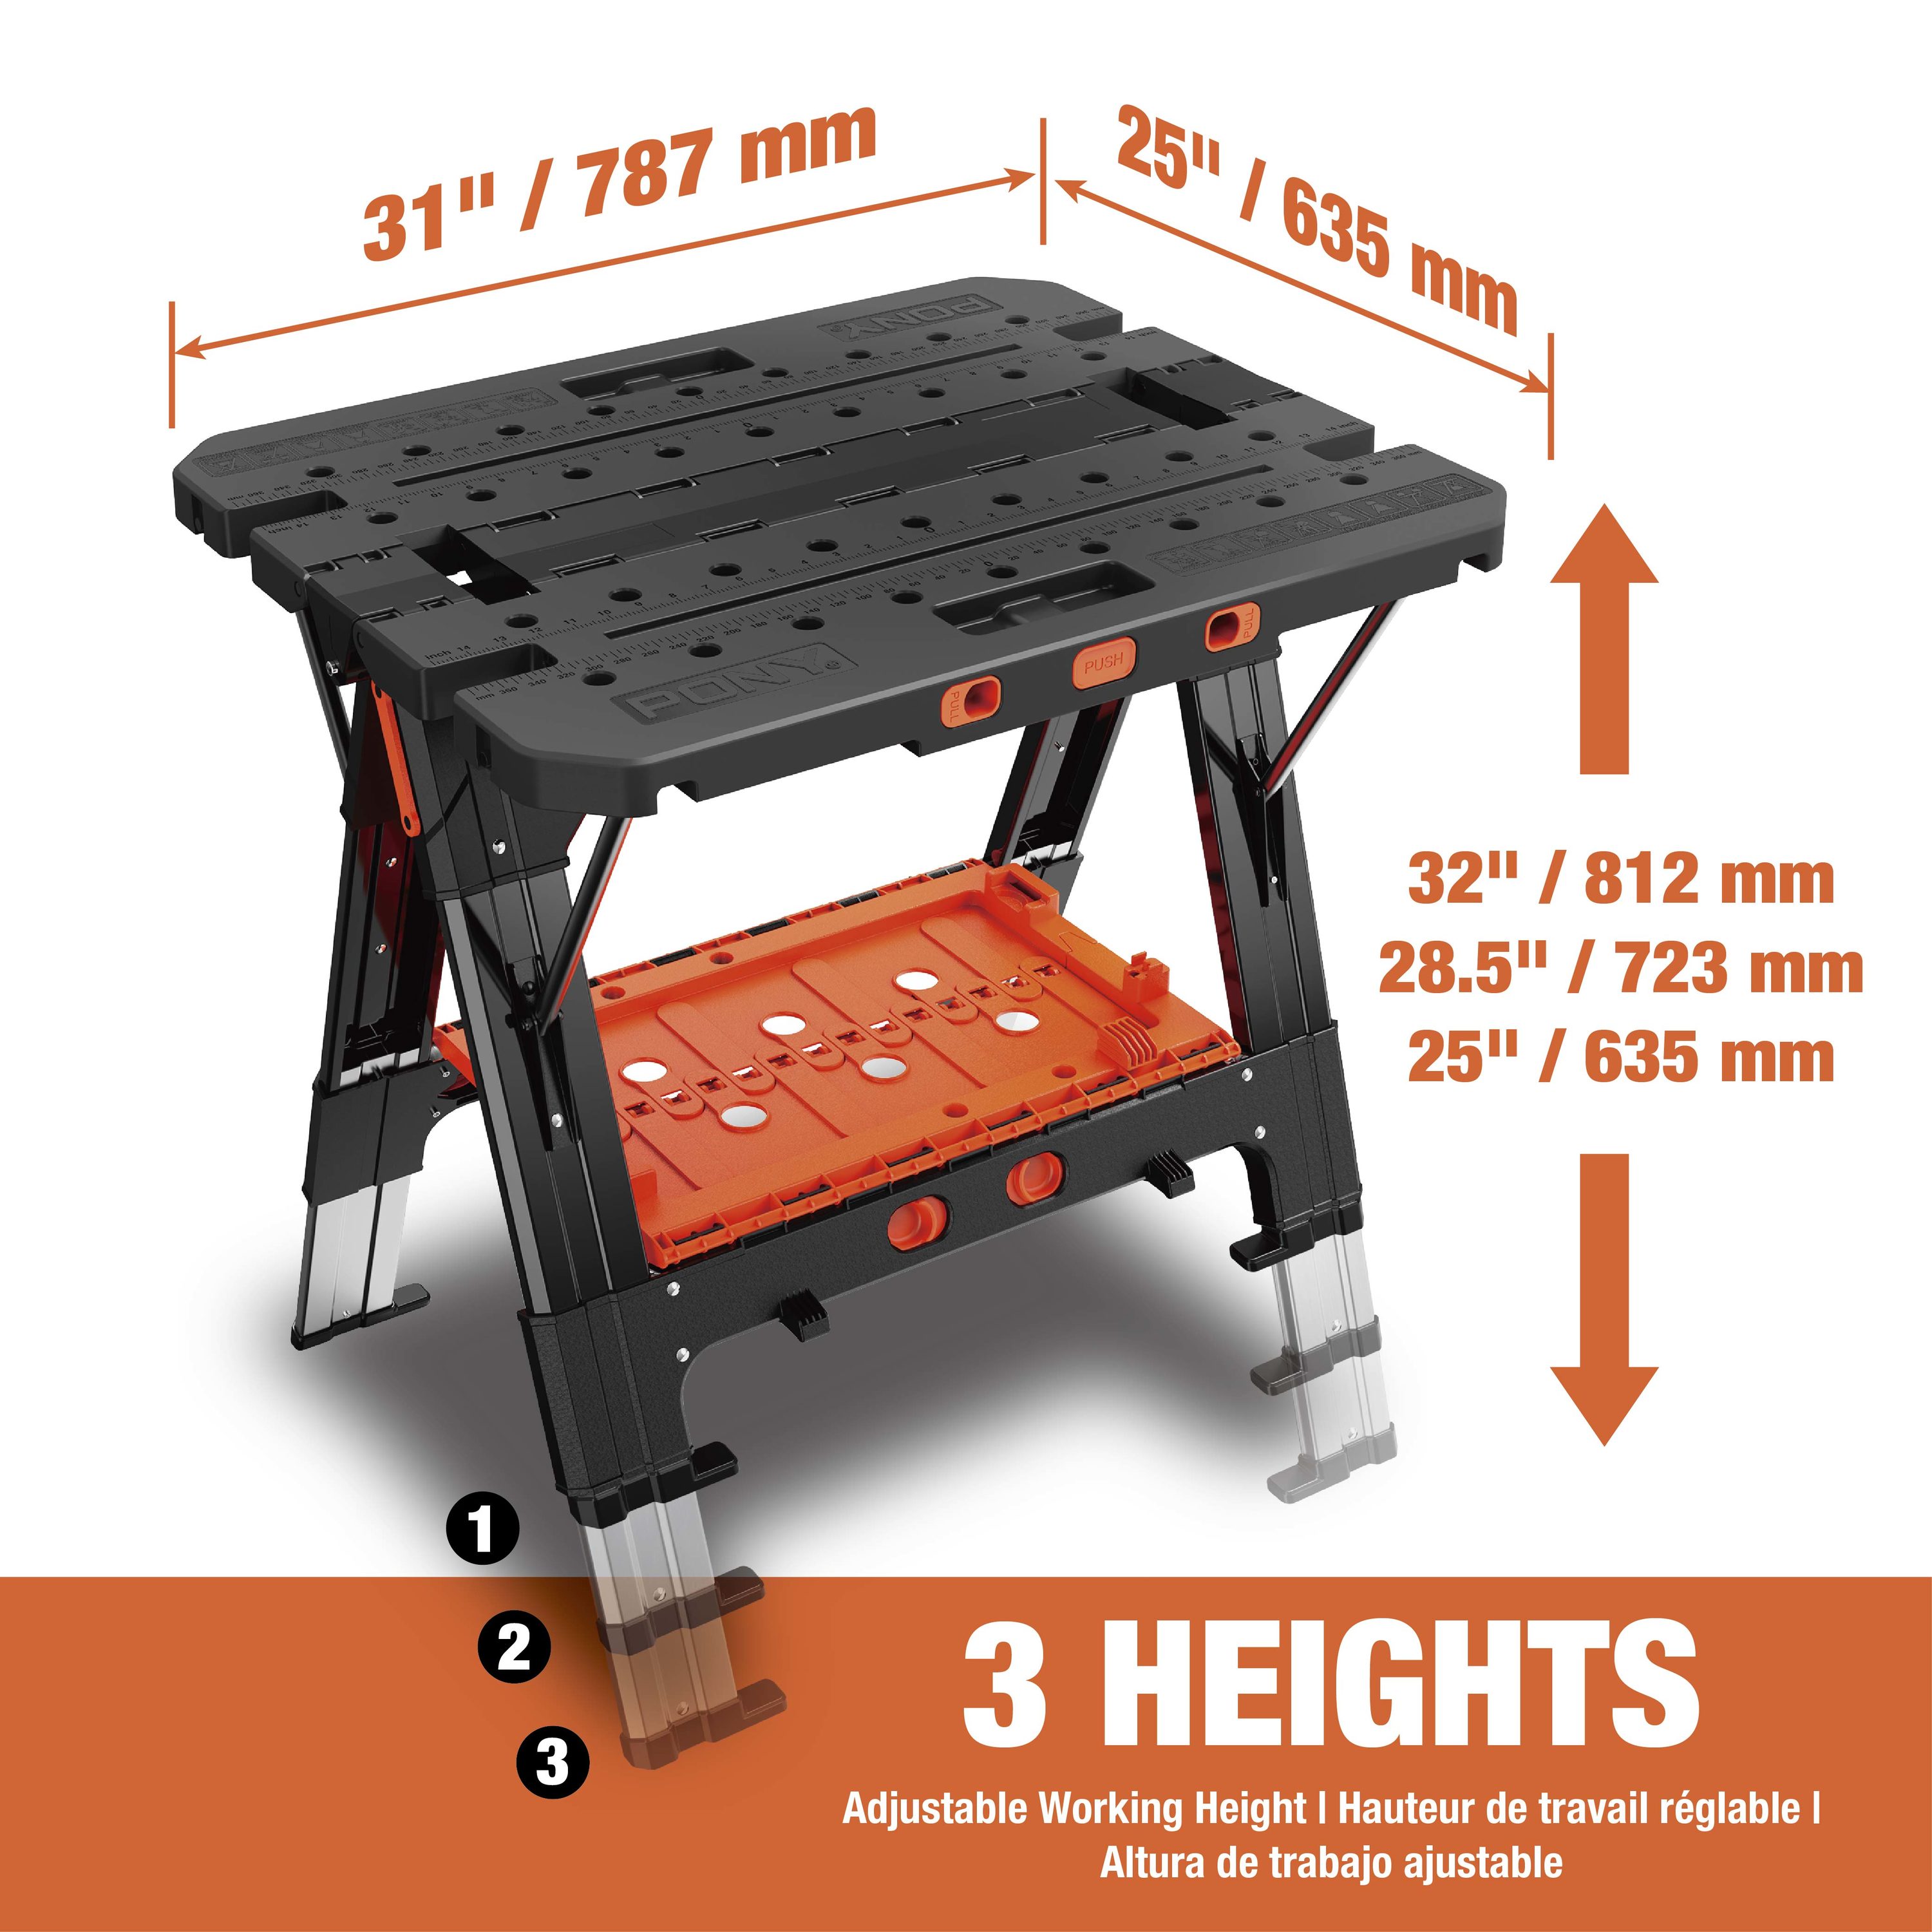 BLACK+DECKER 24-in L x 30.125-in H Black/Orange/Wood Portable Work Bench